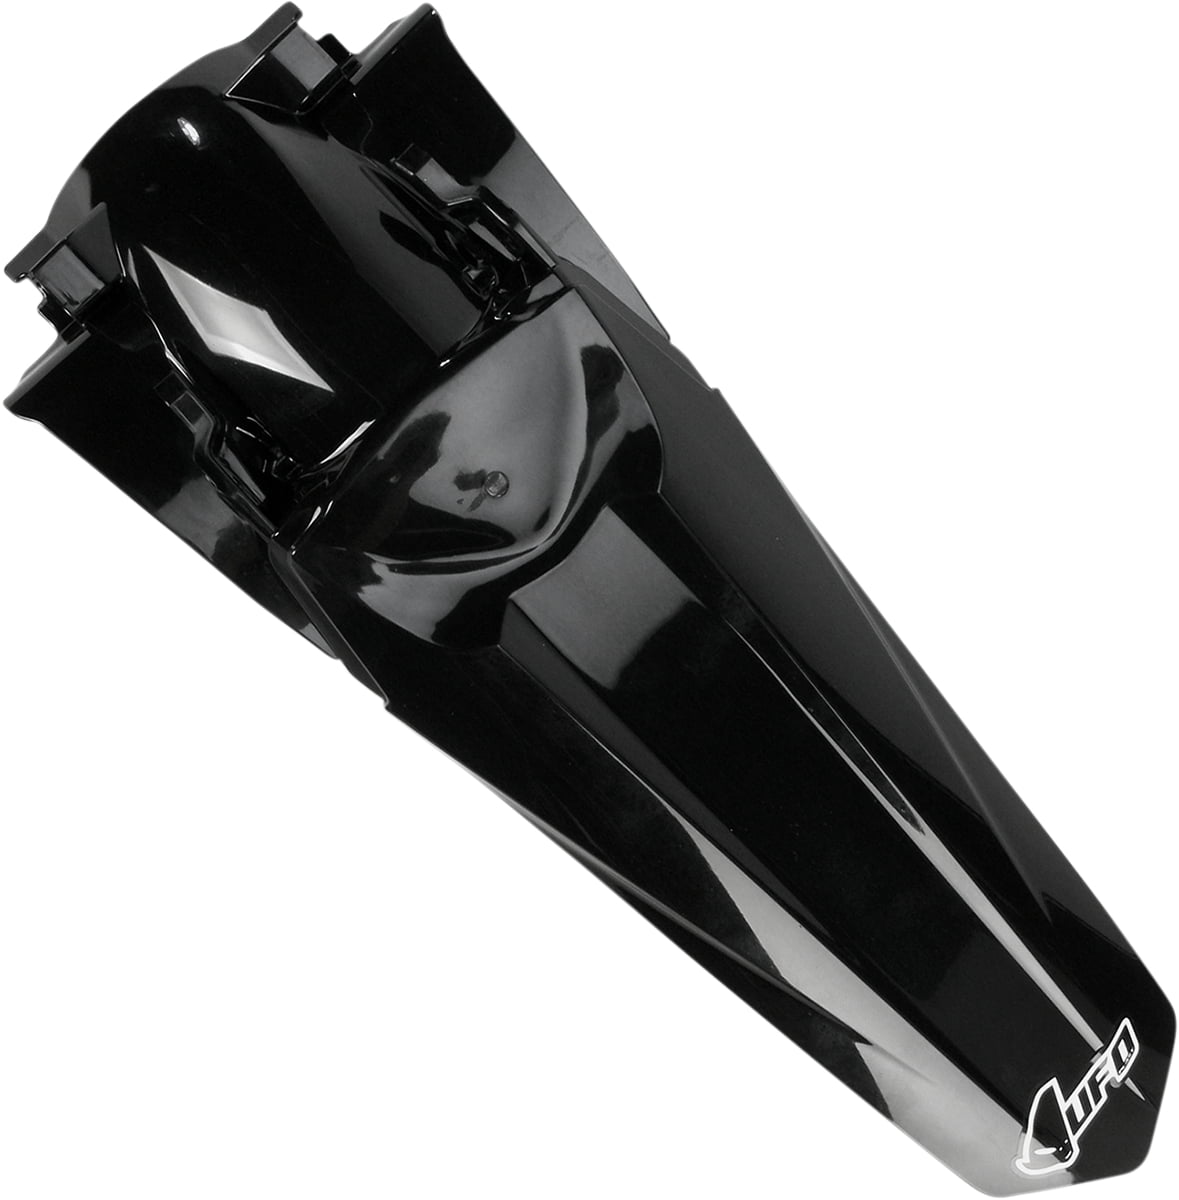 Black OEM Style UFO Plastics Rear Fender Color Black KA03715-001 